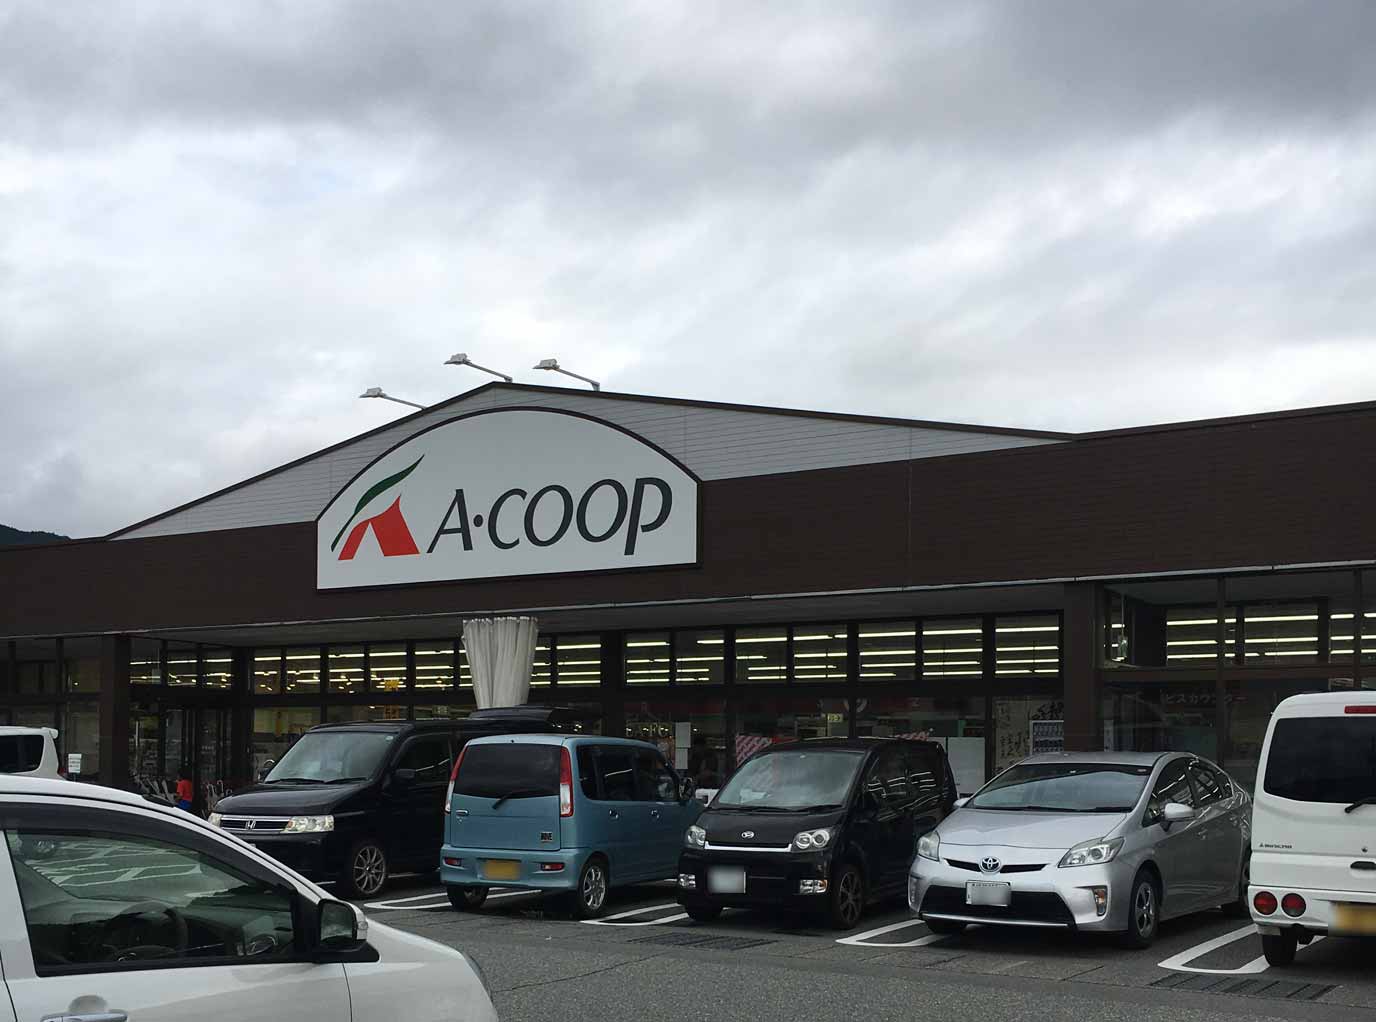 A coop